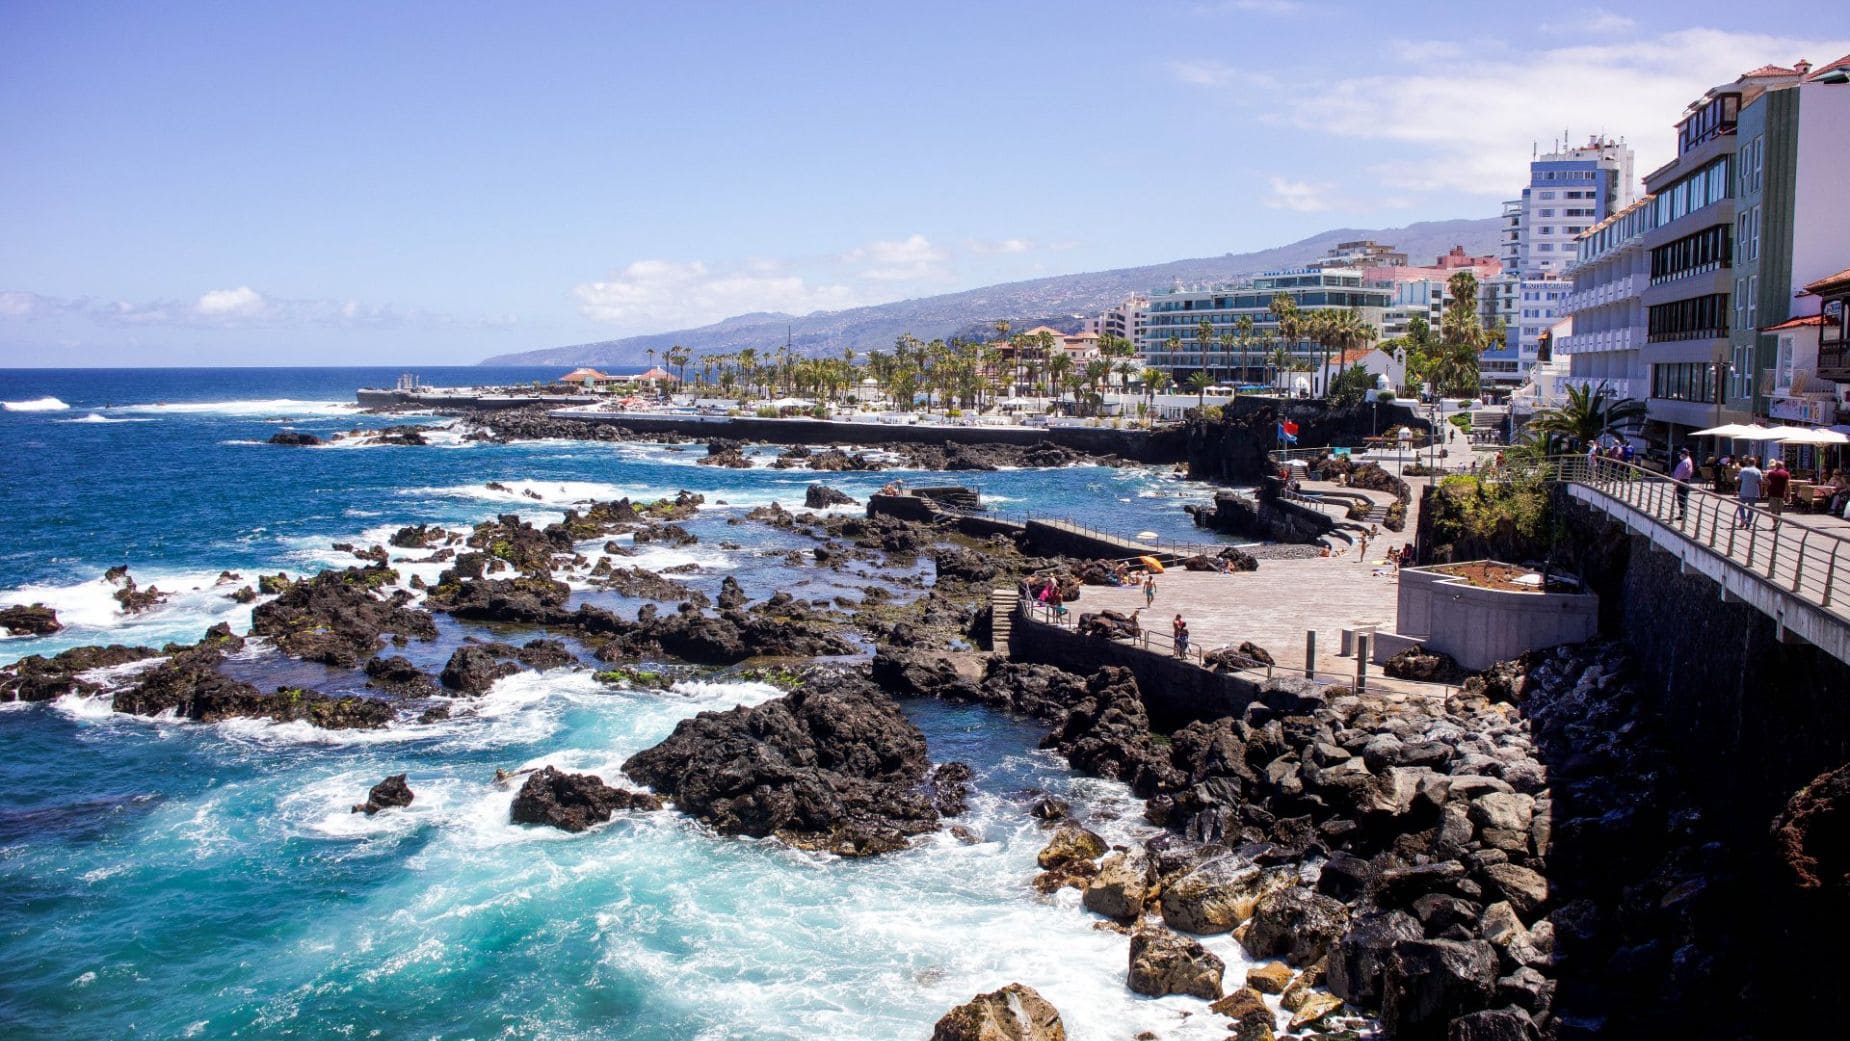 Puerto de la Cruz, en Tenerife, es el destino a bajo precio que ofrece Viajes El Corte Inglés